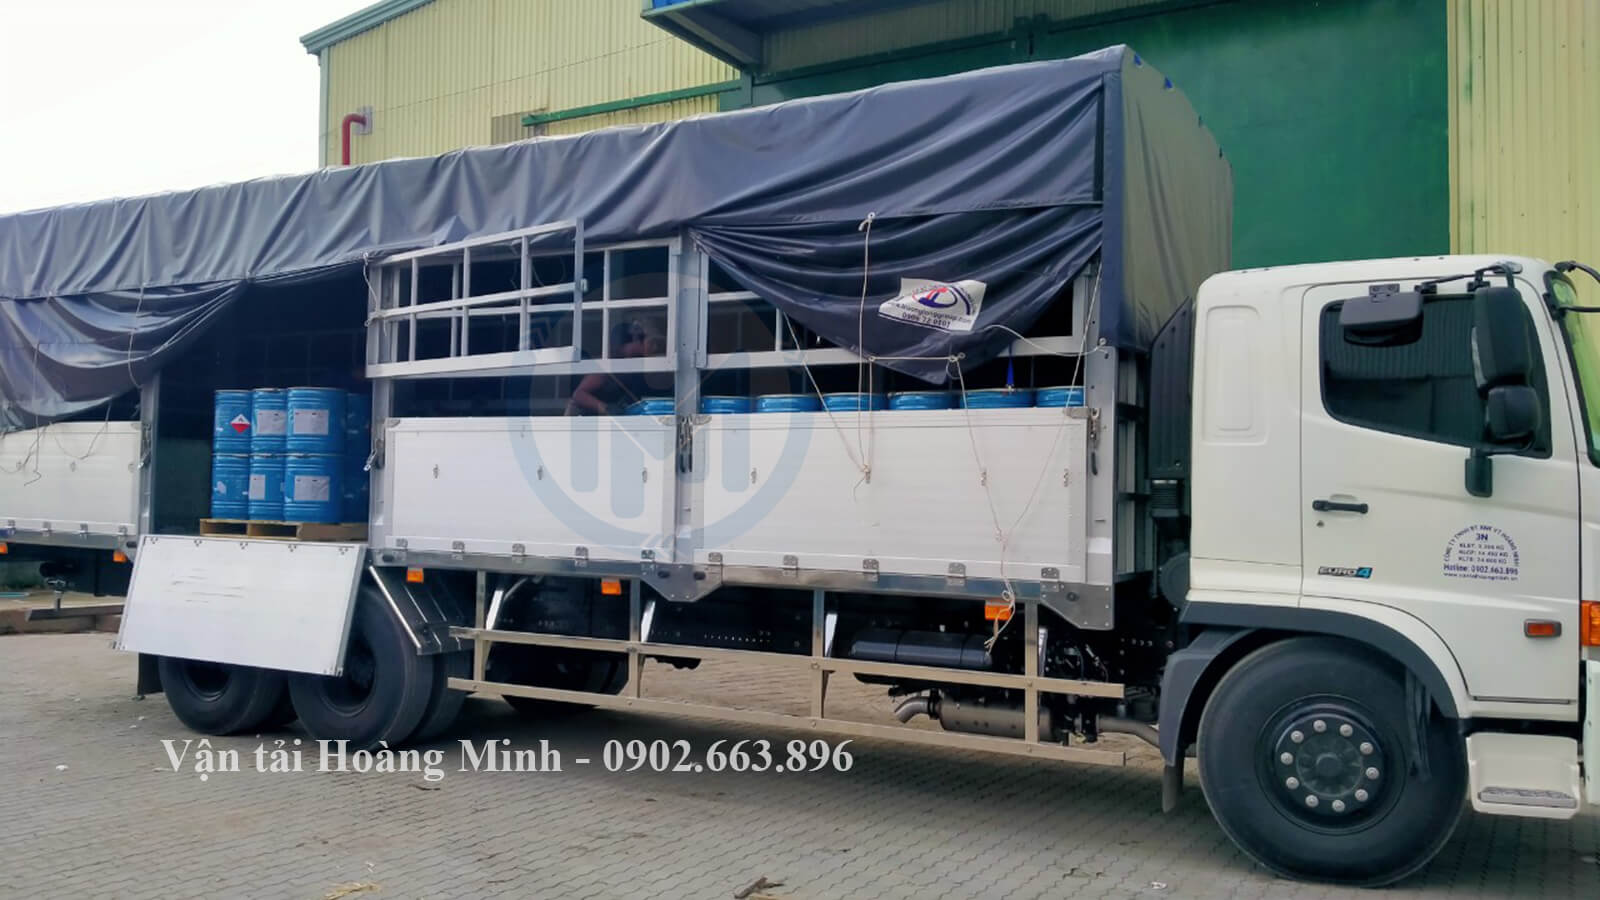 Hình ảnh nhân viên Hoàng Minh vận chuyển hoá chất bằng xe tải chở hàng tại KCN Mỹ Thanh, Sóc Trăng.jpg